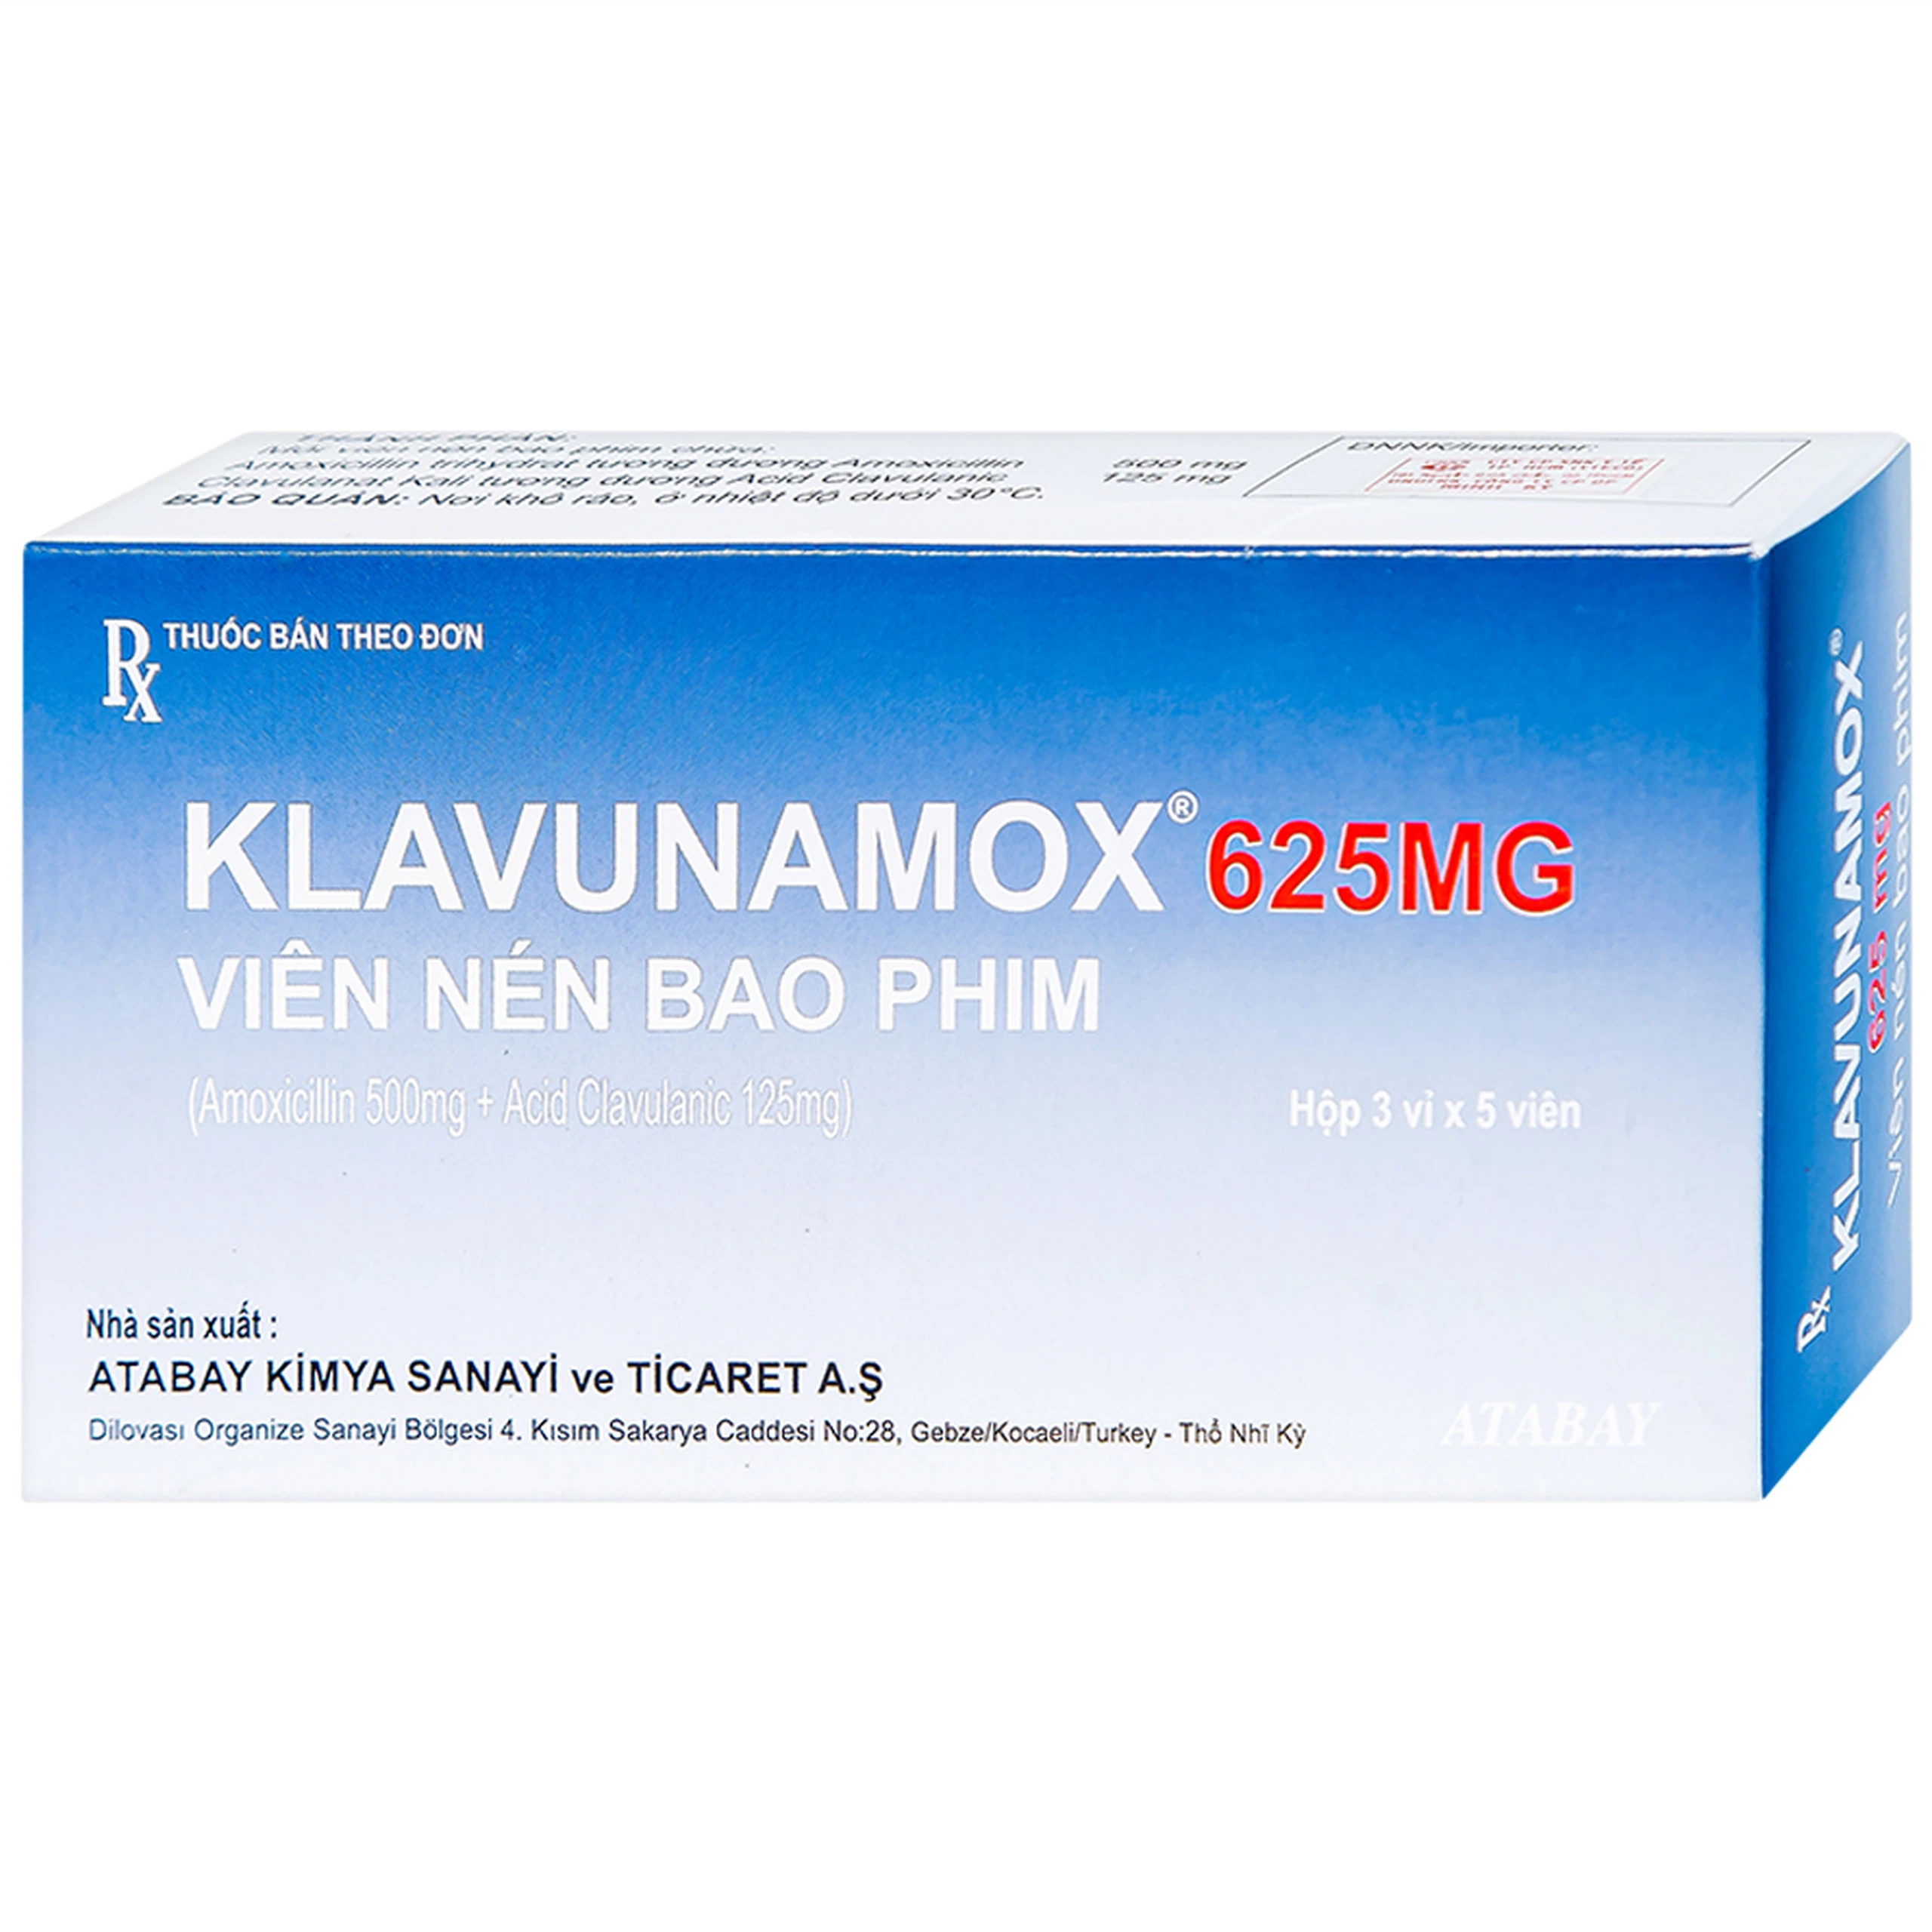 Thuốc Klavunamox 625mg Atabay điều trị nhiễm khuẩn đường hô hấp, da và mô mềm (3 vỉ x 5 viên)